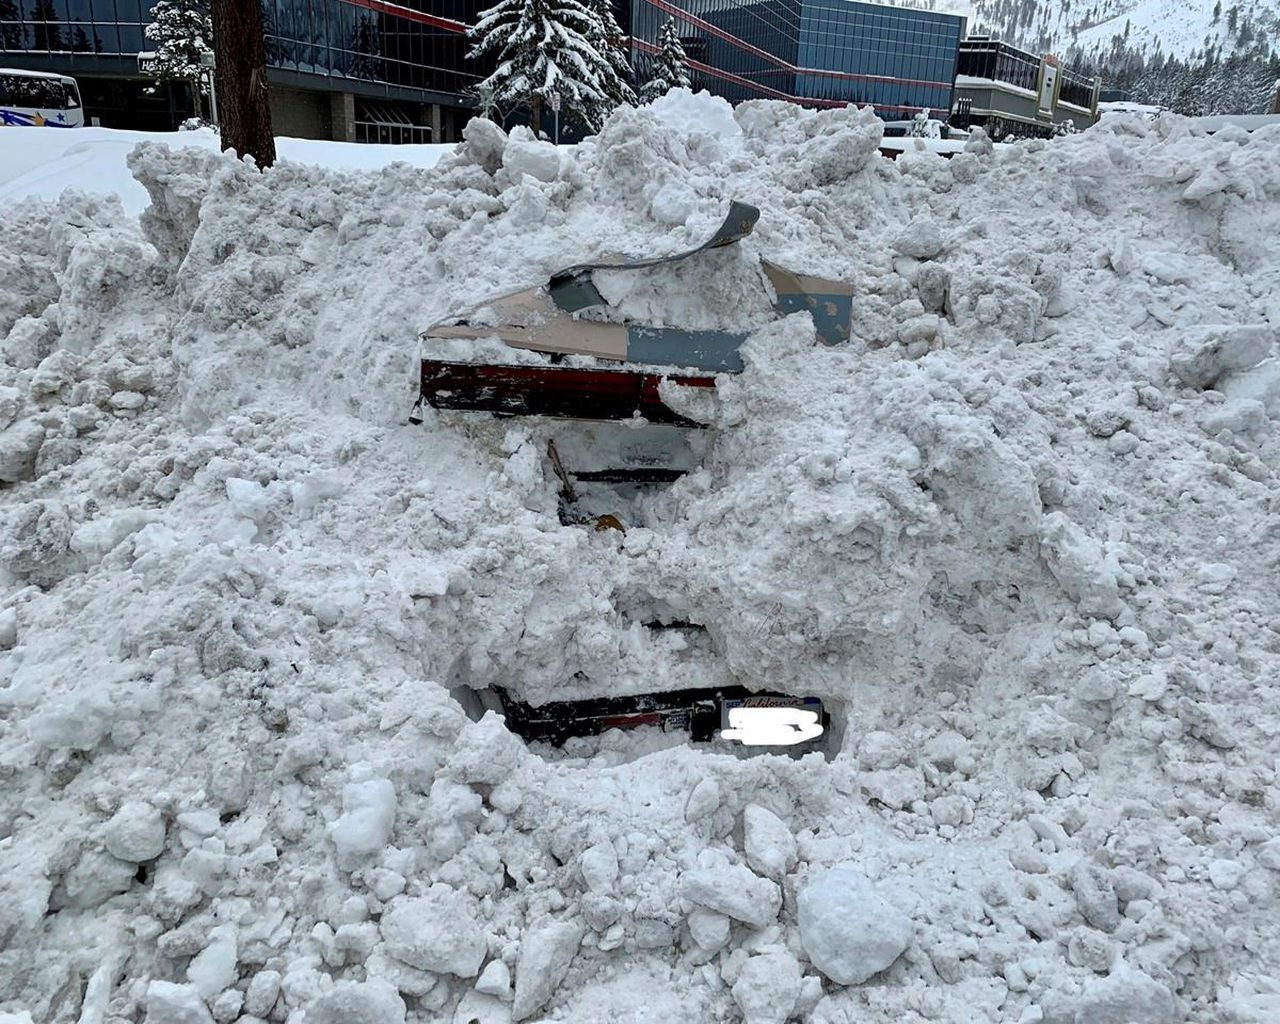 Село занесенное снегом оттаивает по немногу. Машина завалена снегом. Машину засыпало снегом. Засыпать снегом автомобиль. Машина под сугробом.